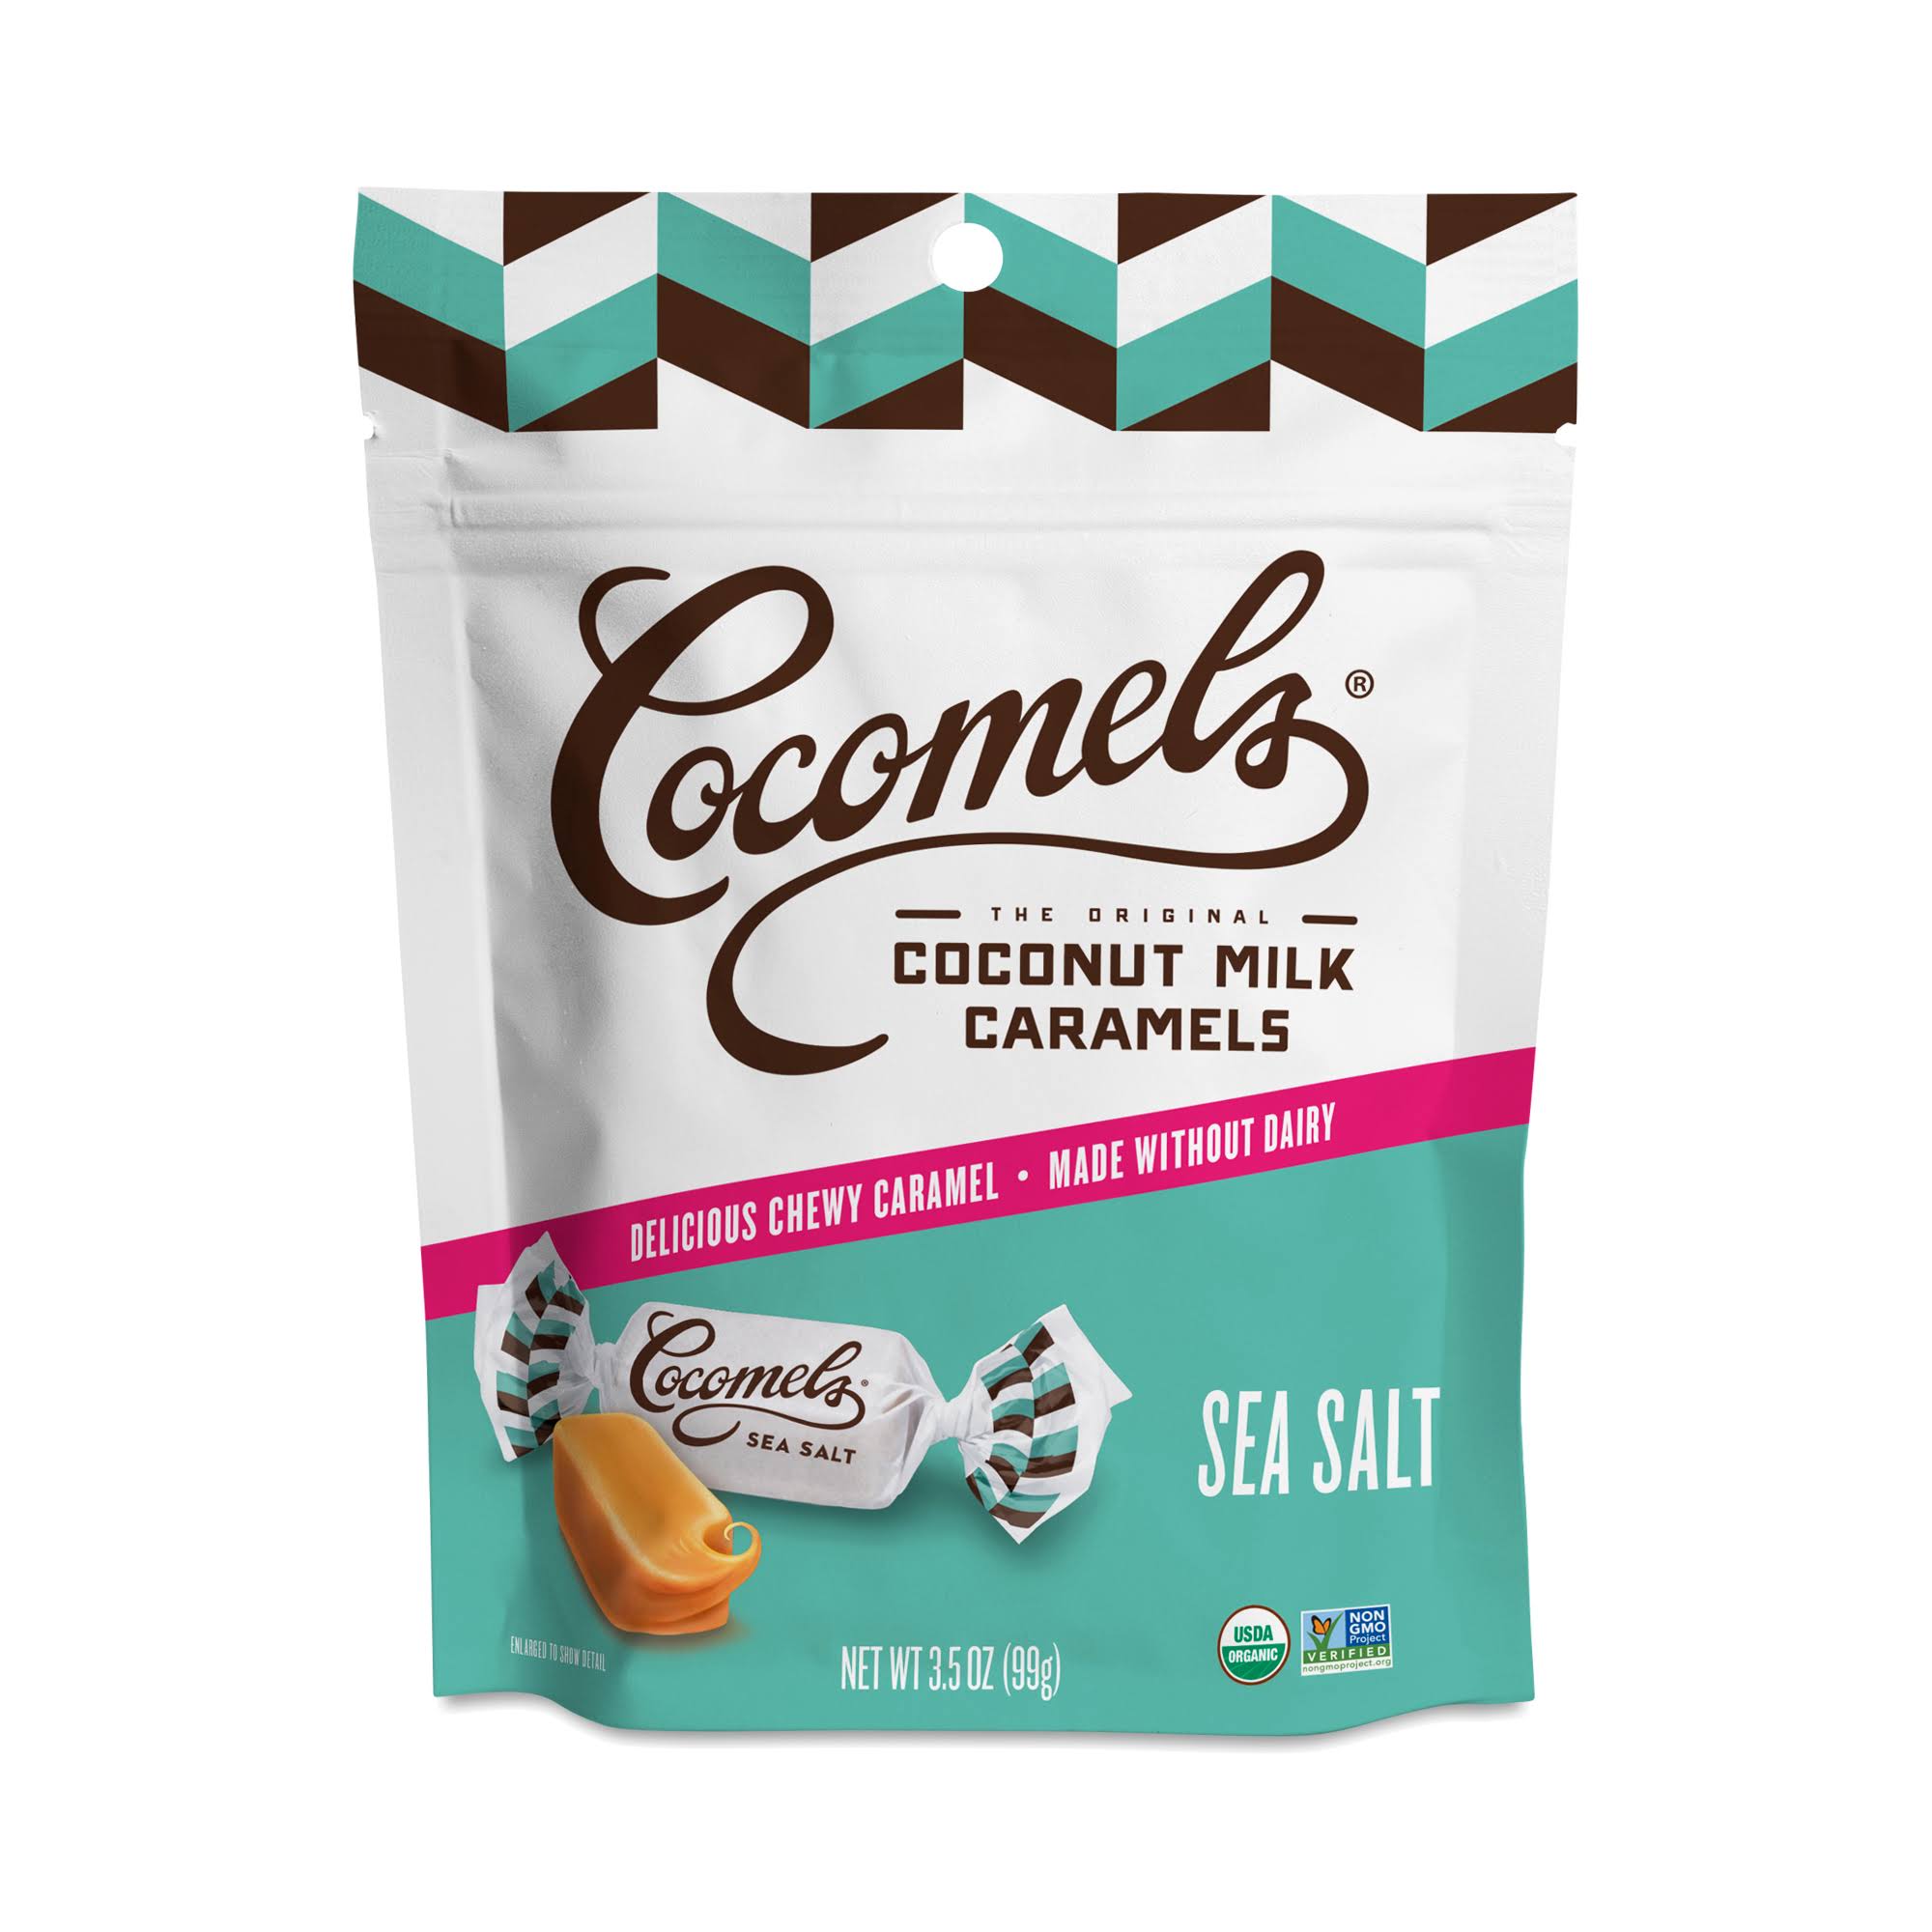 Cocomels Coconut Milk Caramels - Sea Salt, 3.5oz